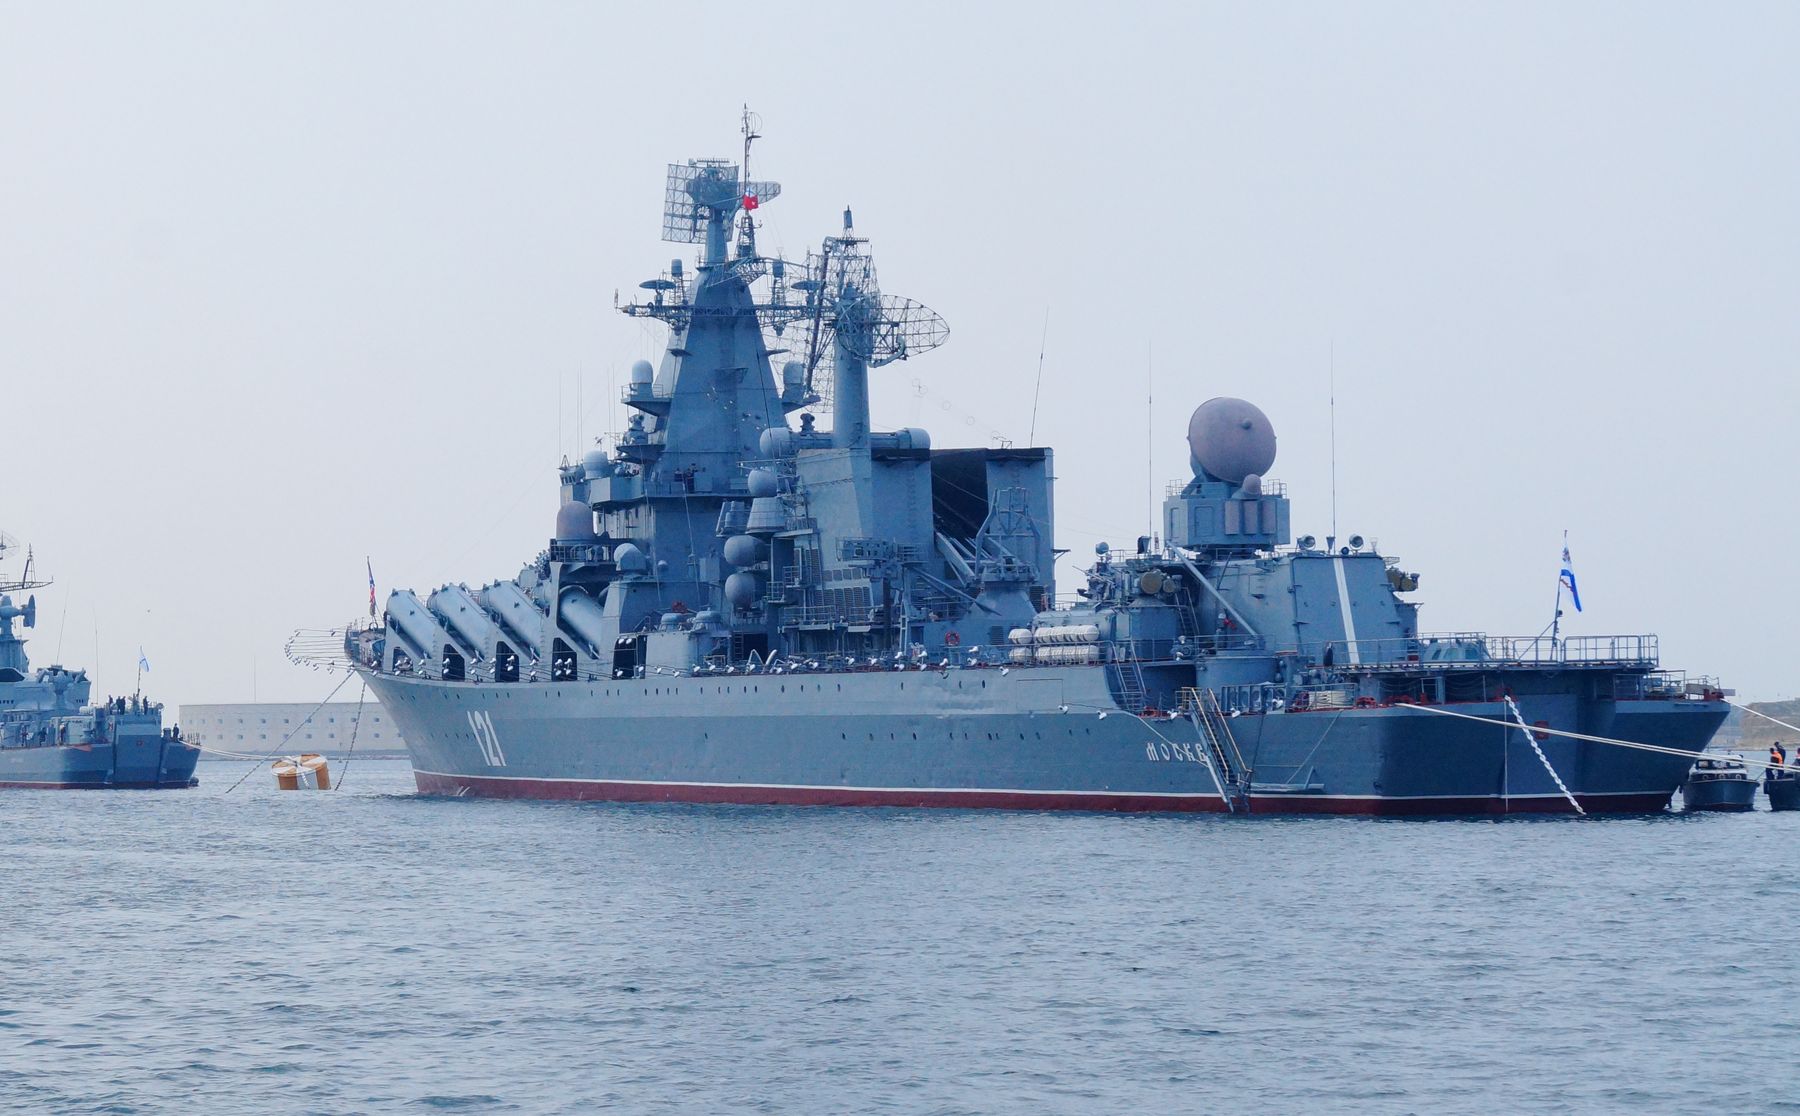 Черноморский флот РФ следит за учениями Sea Breeze